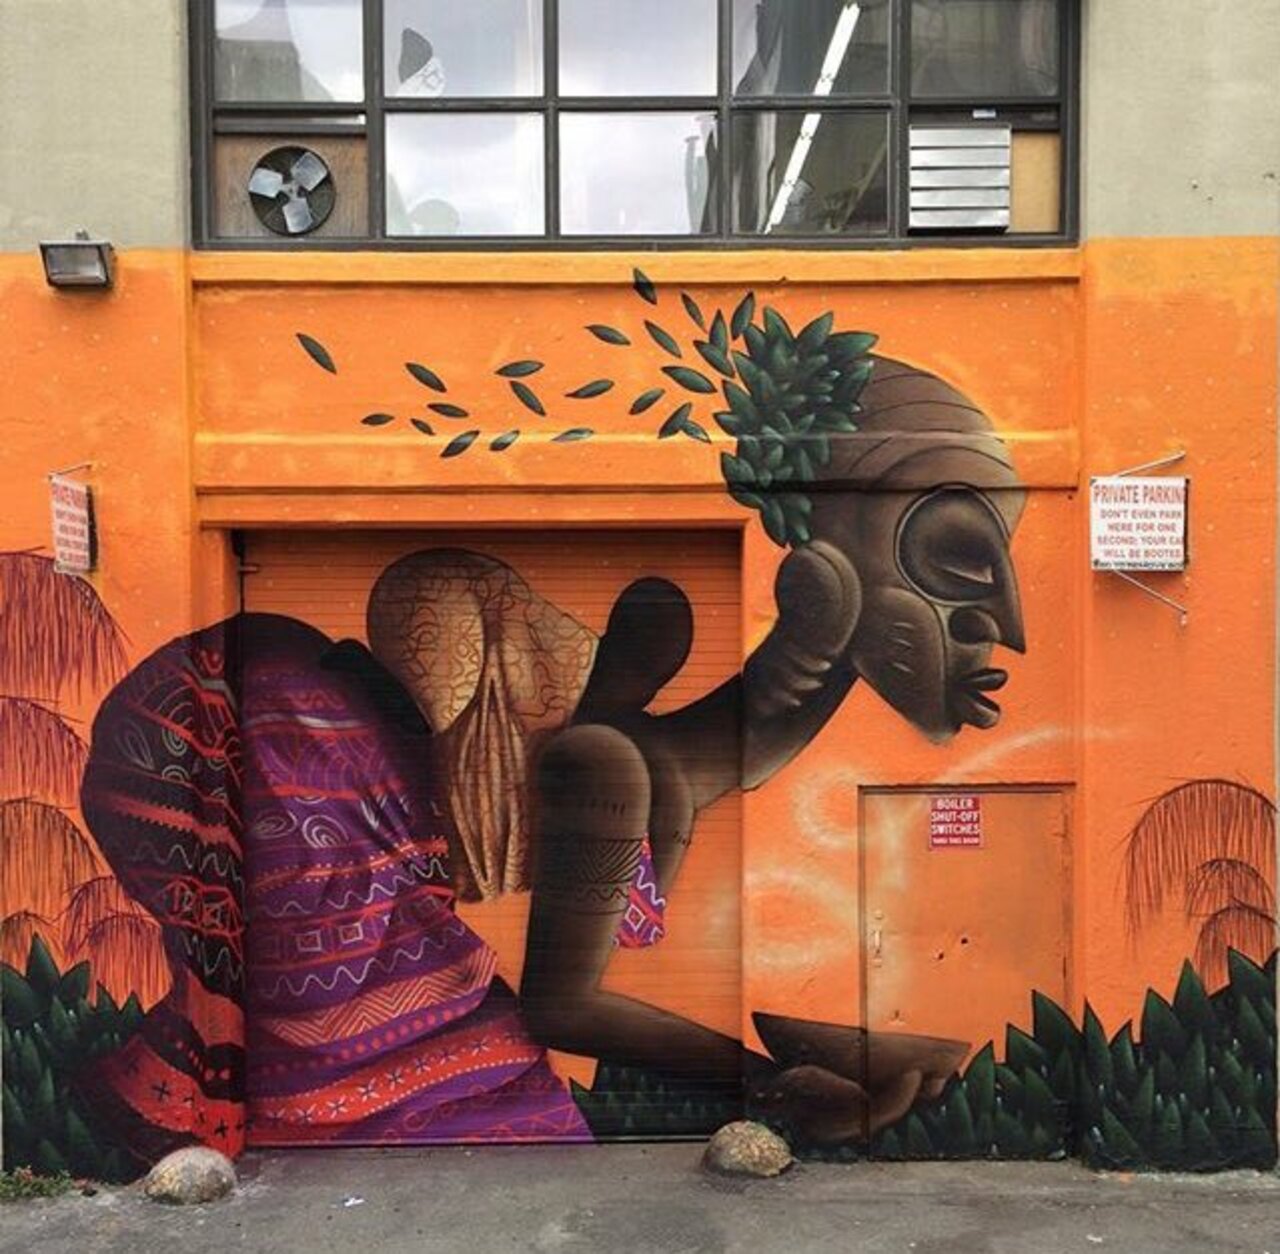 New tumblr post: "New tumblr post: "New Street Art by Alexandre Keto in NYC 

#art #graffiti #mural #streetart https://t.co/cQMhKU6JM9" …" …